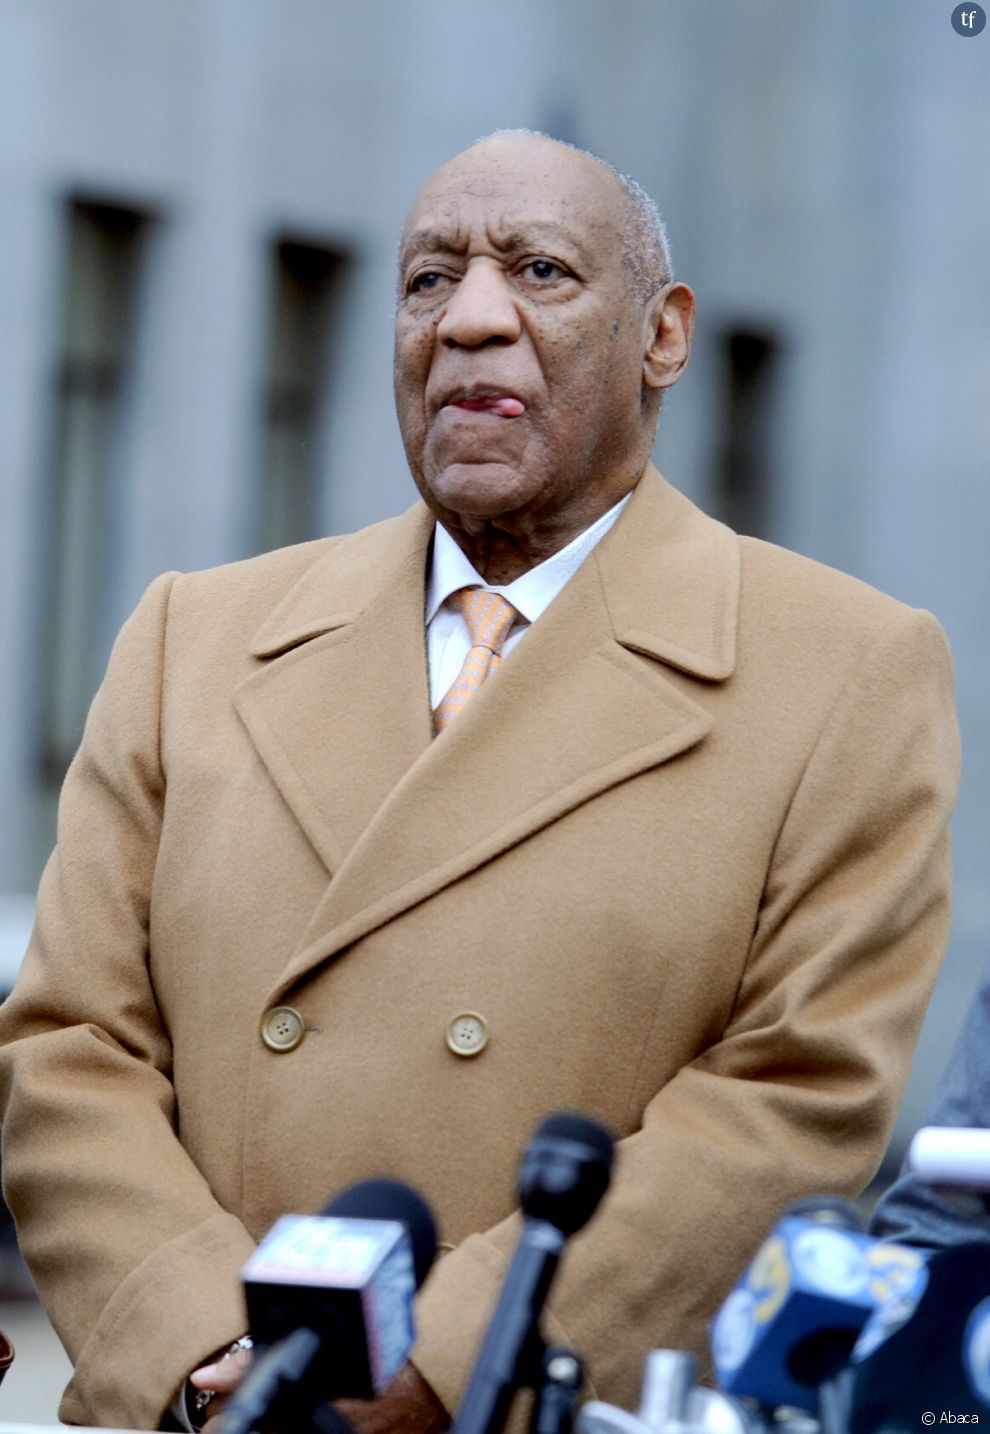  Poursuivi pour agressions sexuelles, Bill Cosby pense déjà... à remonter sur scène 